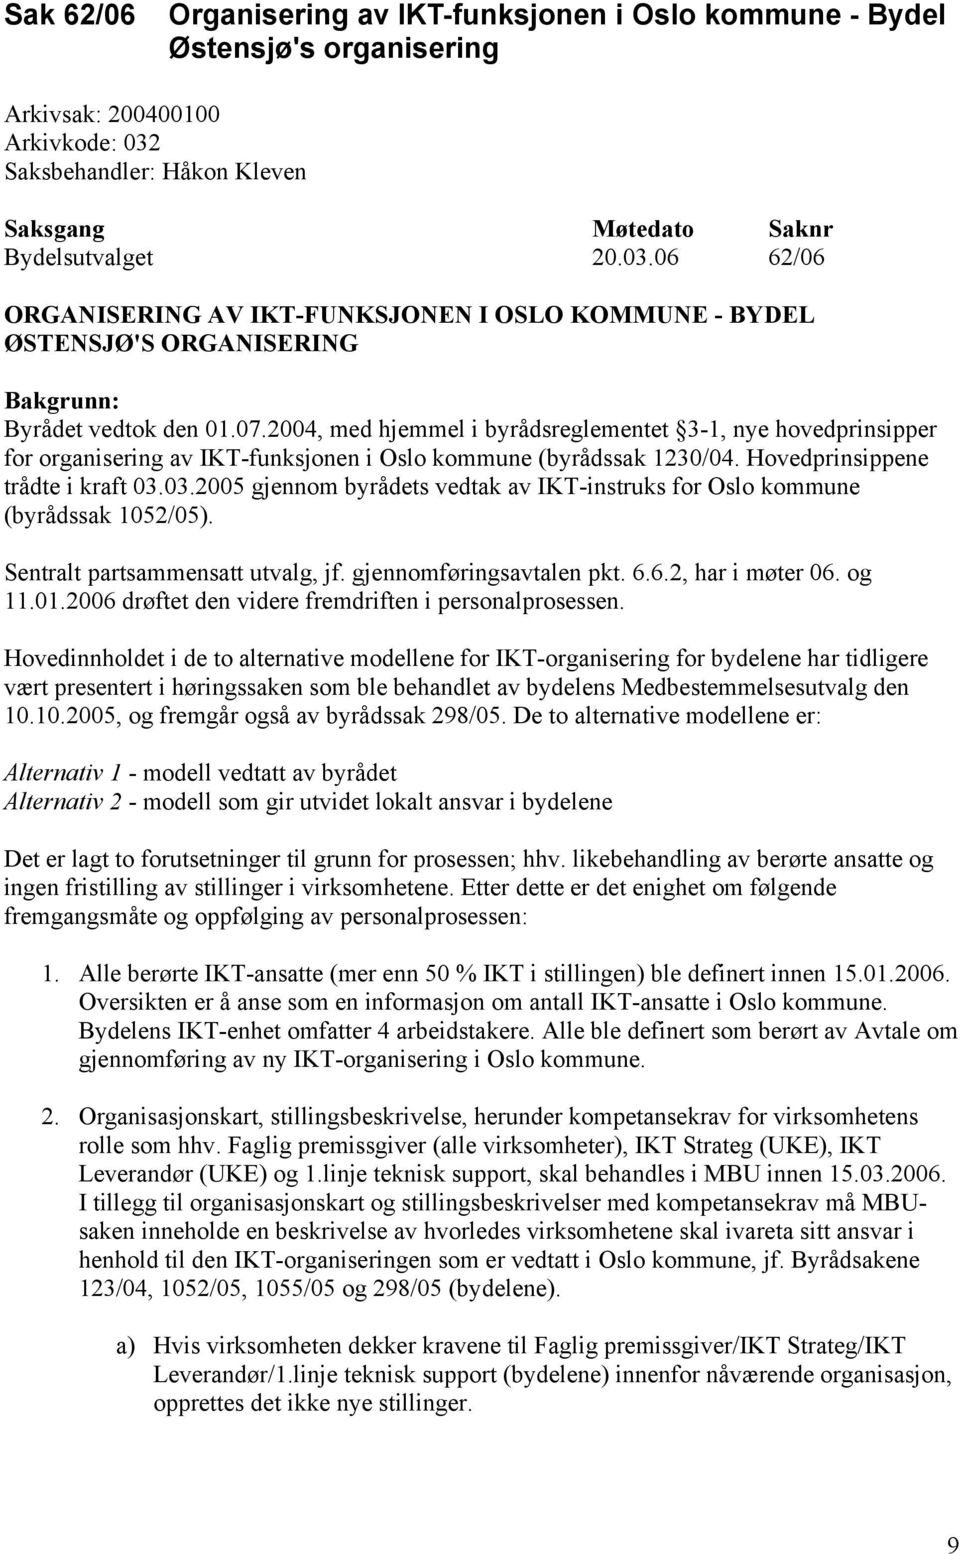 2004, med hjemmel i byrådsreglementet 3-1, nye hovedprinsipper for organisering av IKT-funksjonen i Oslo kommune (byrådssak 1230/04. Hovedprinsippene trådte i kraft 03.